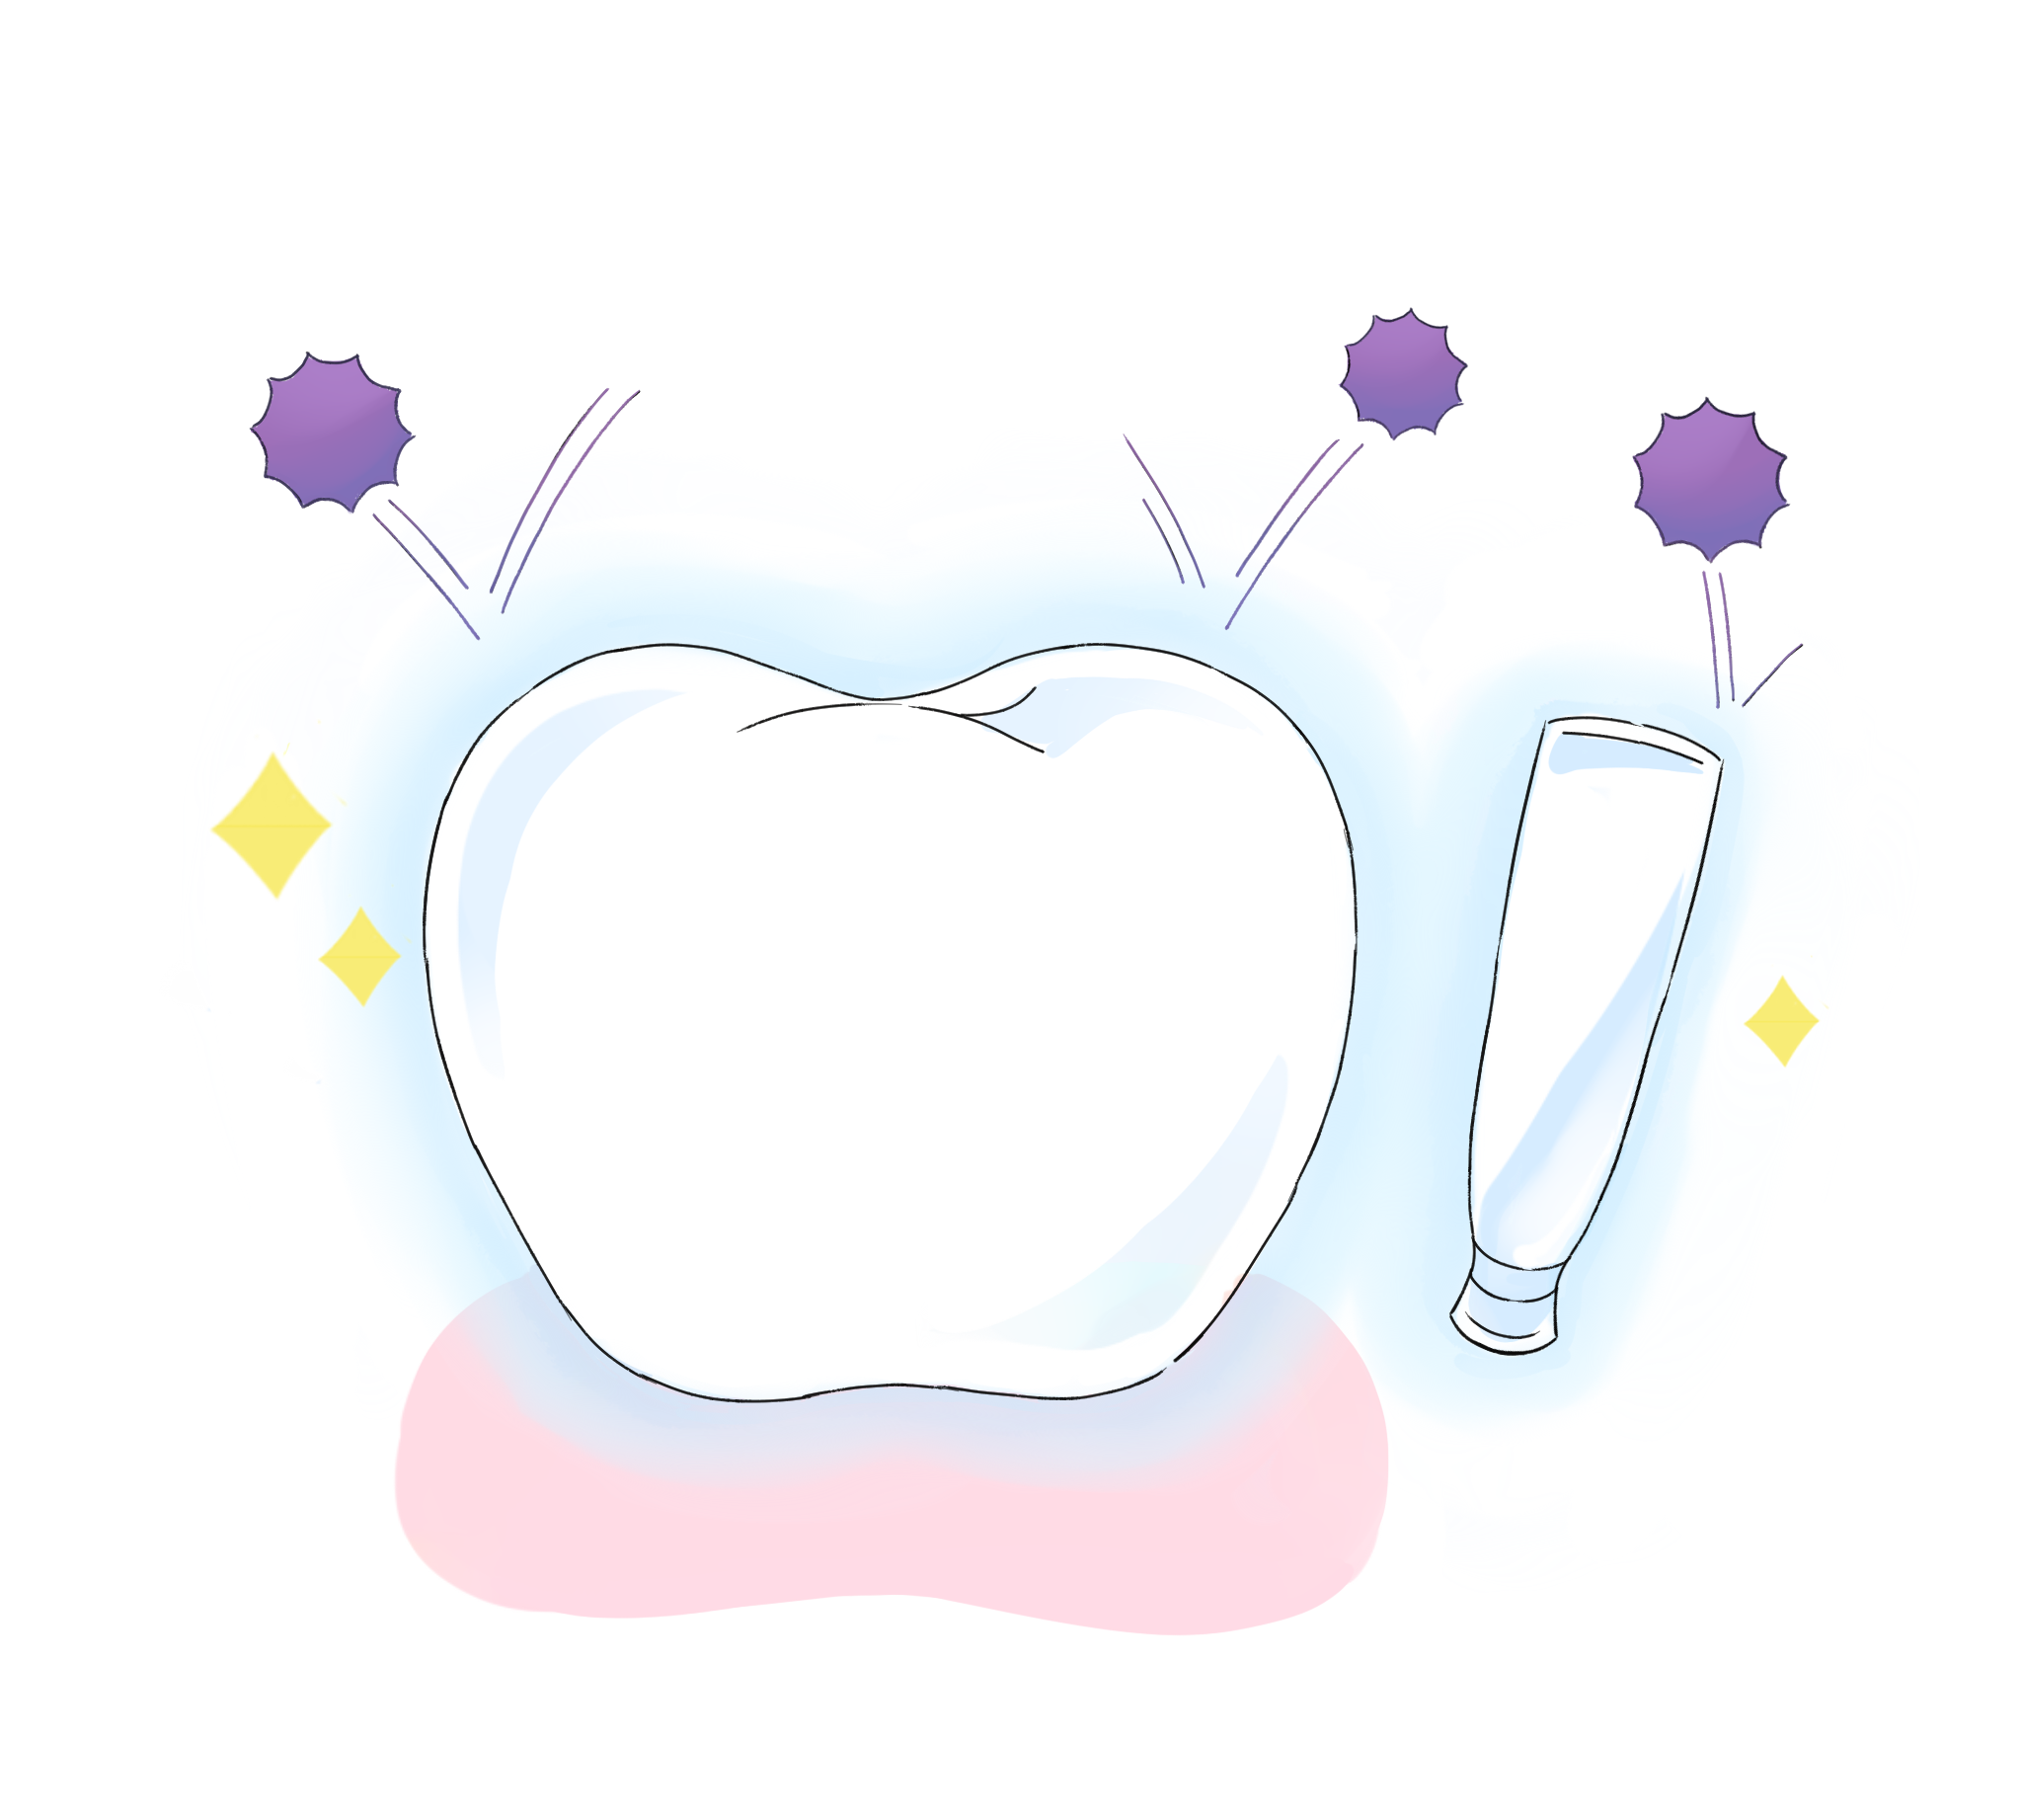 NMN配合の「プレミアムオーラルジェル」で歯磨きする事で、歯肉を強くし、口腔内のバランスを保ちます。